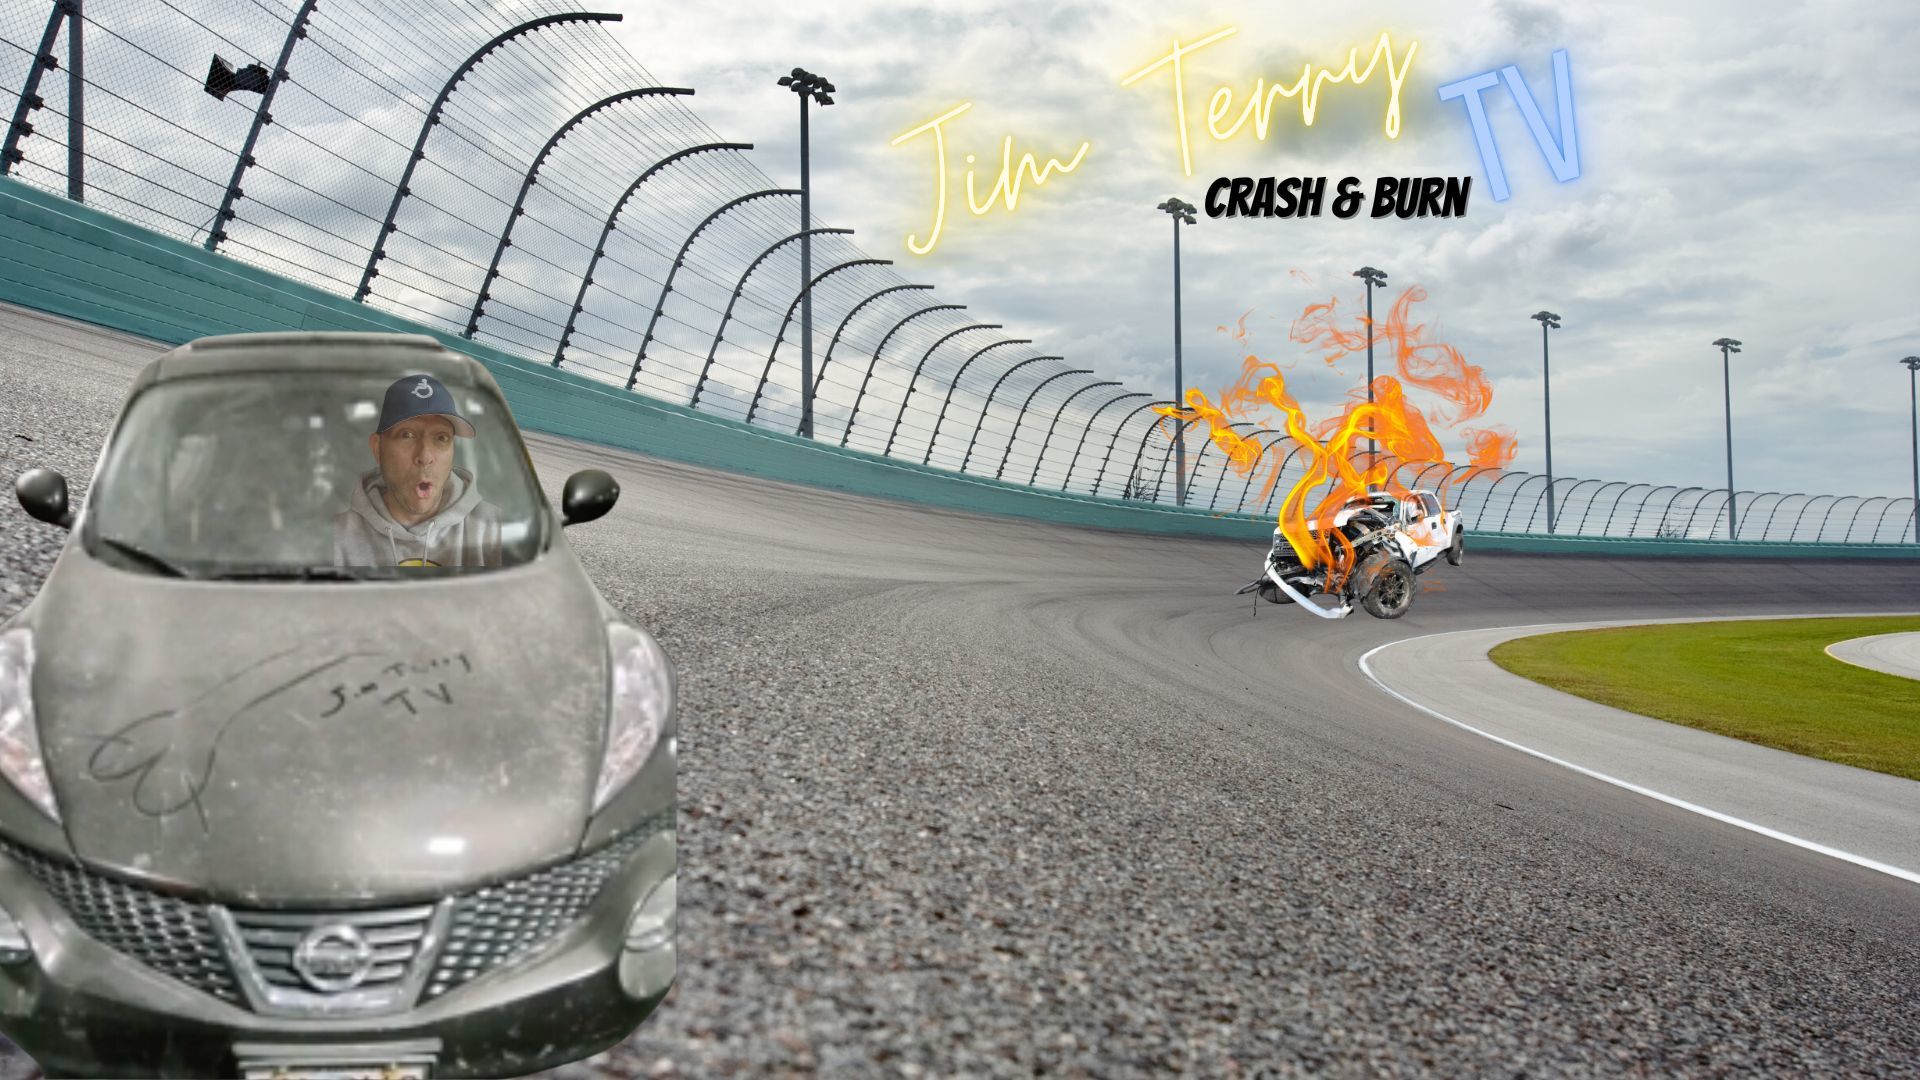 Jim Terry TV: Crash & Burn (S1:E32)